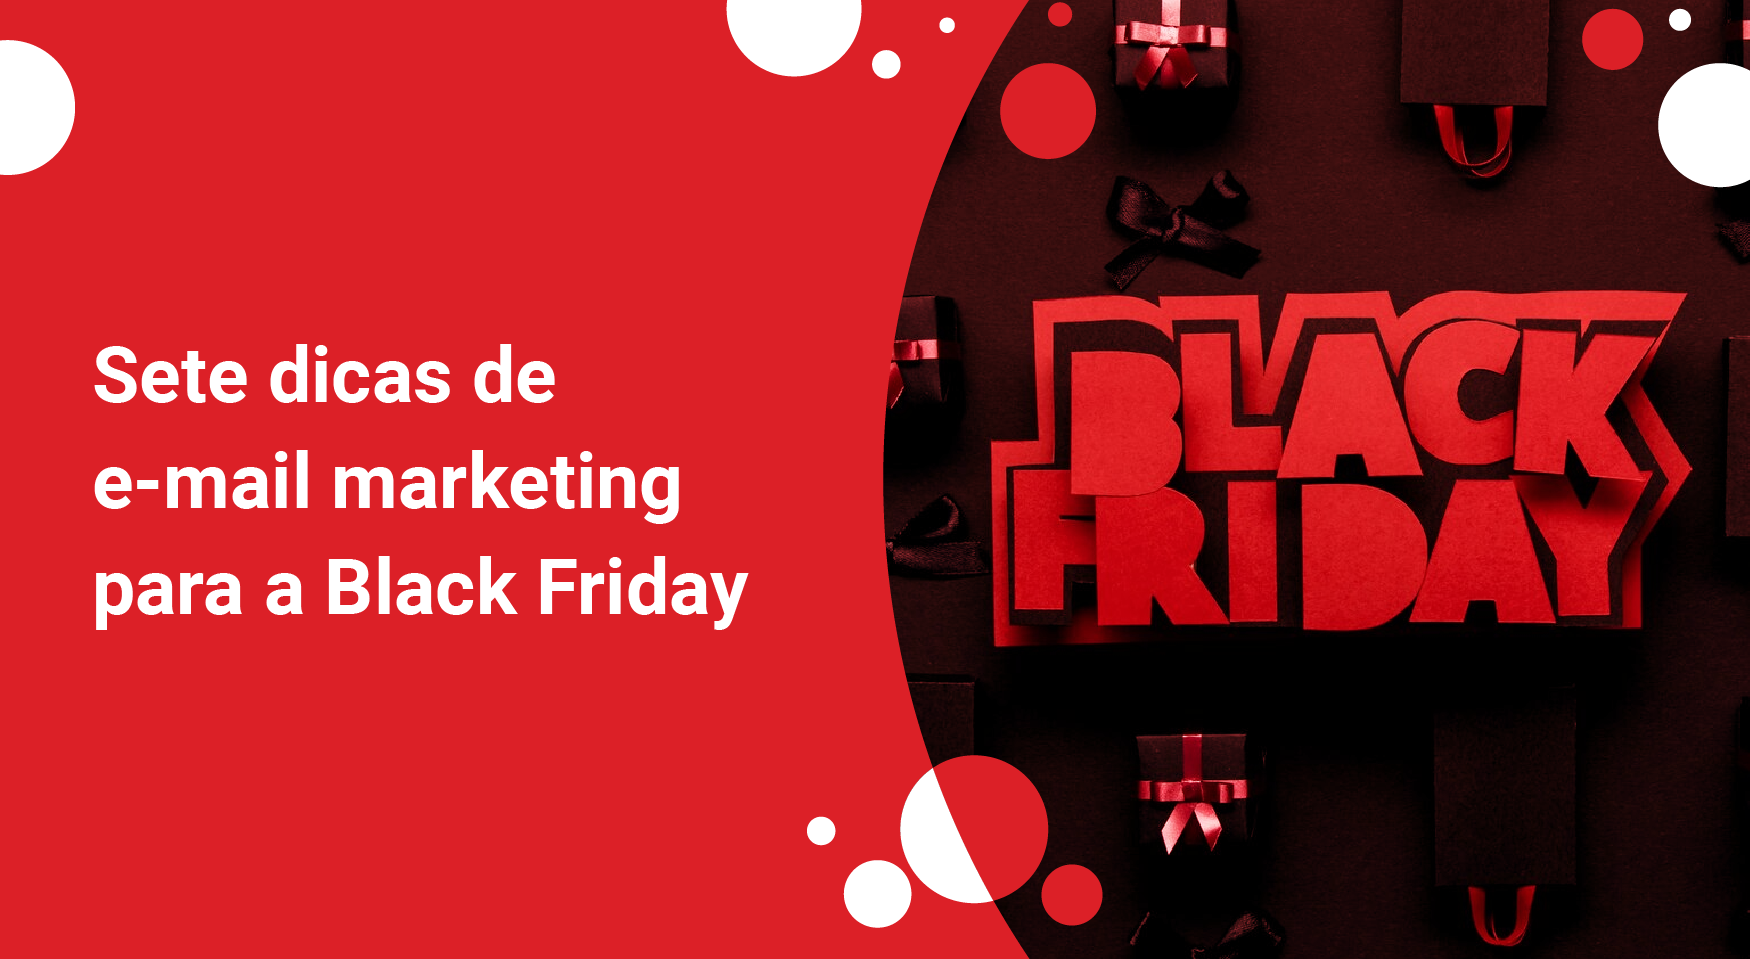 Sete dicas de e-mail marketing para a Black Friday